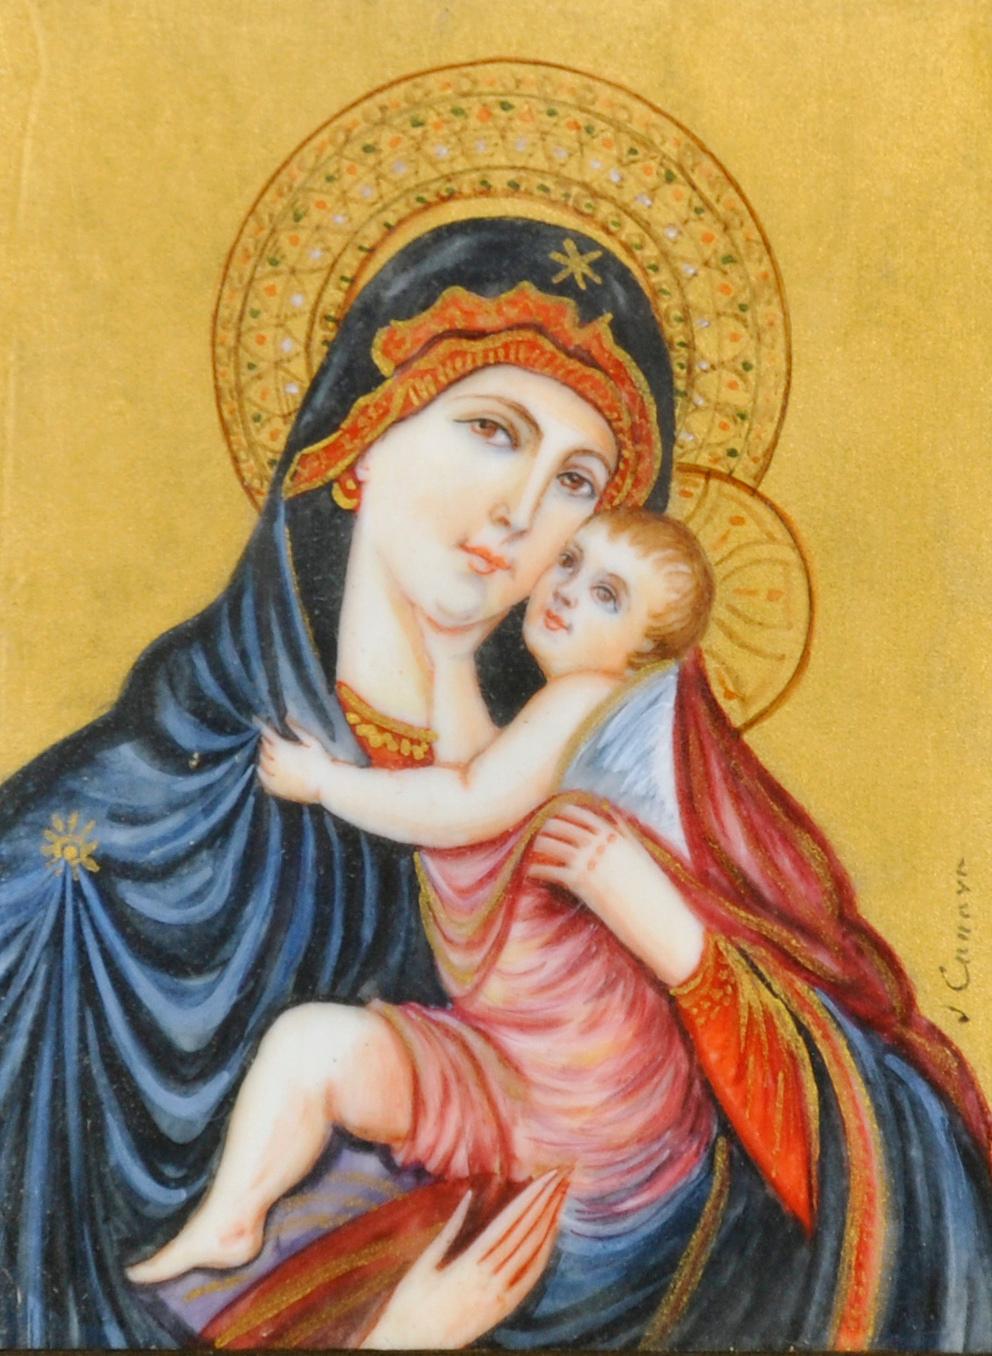 Pintura en miniatura italiana del siglo XIX La Madonna & Child, original firmada